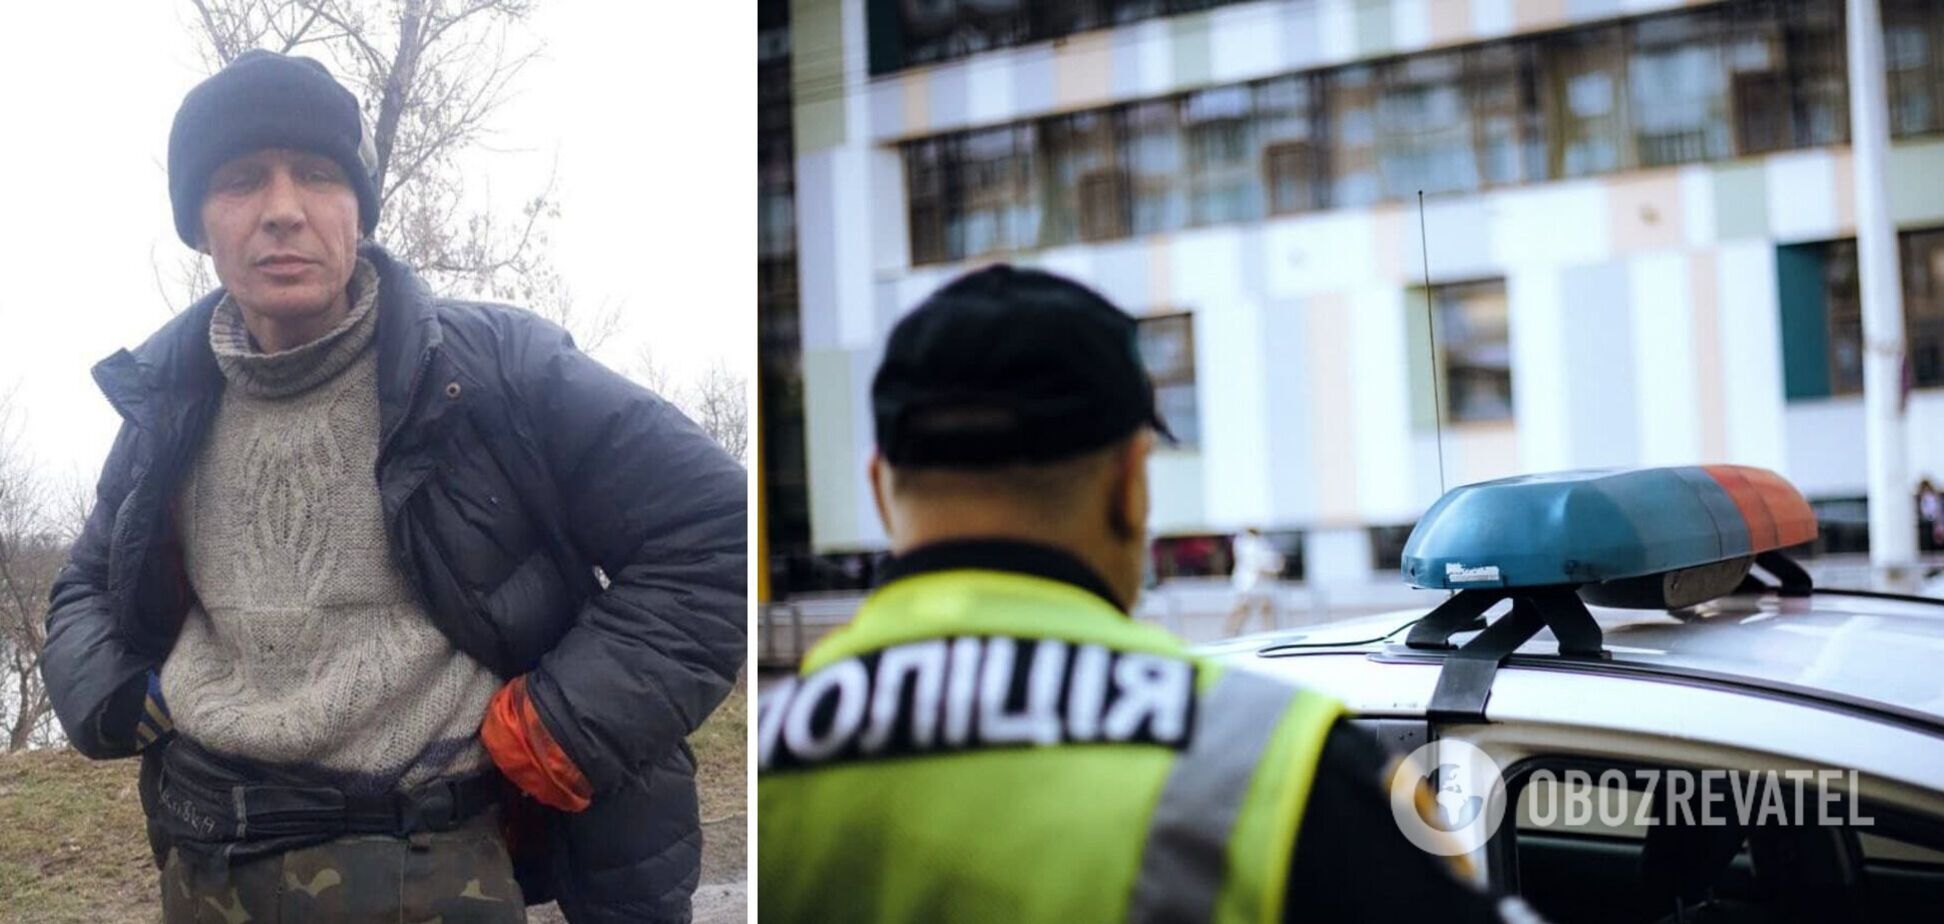 З психіатричної лікарні під Києвом втік небезпечний злочинець, який убив людину: фото та прикмети